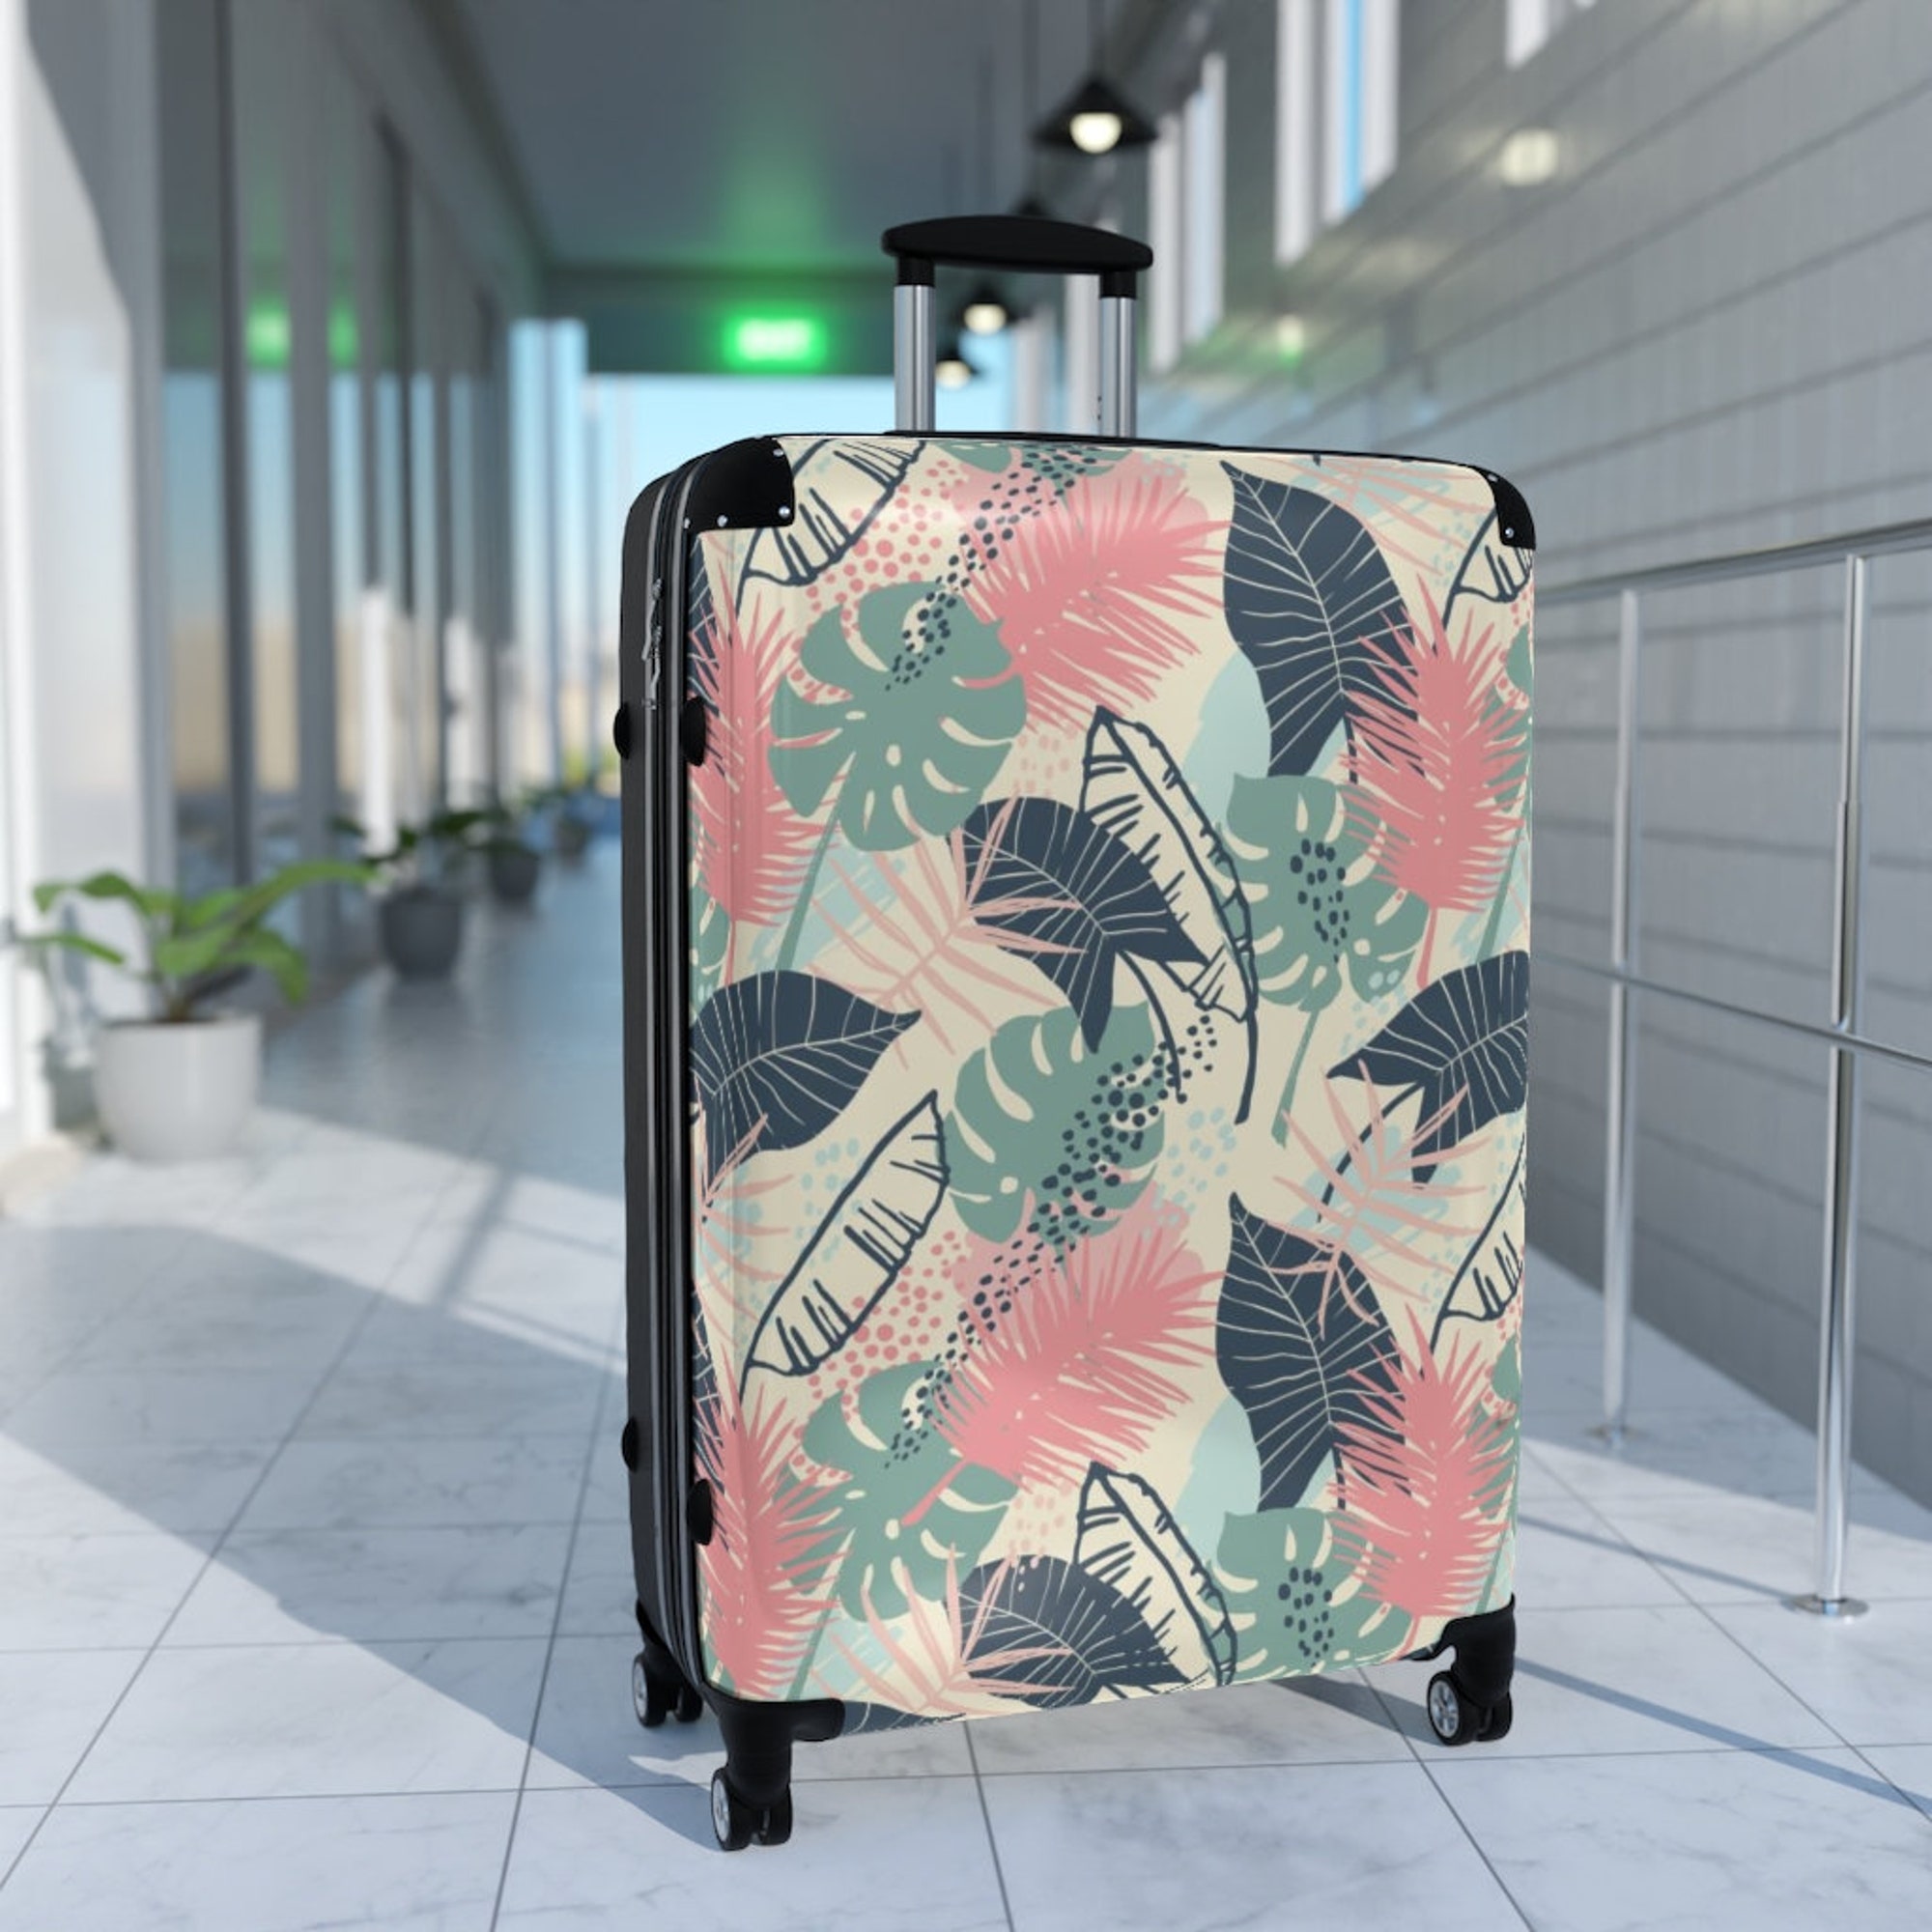 The Raeni Suitcase